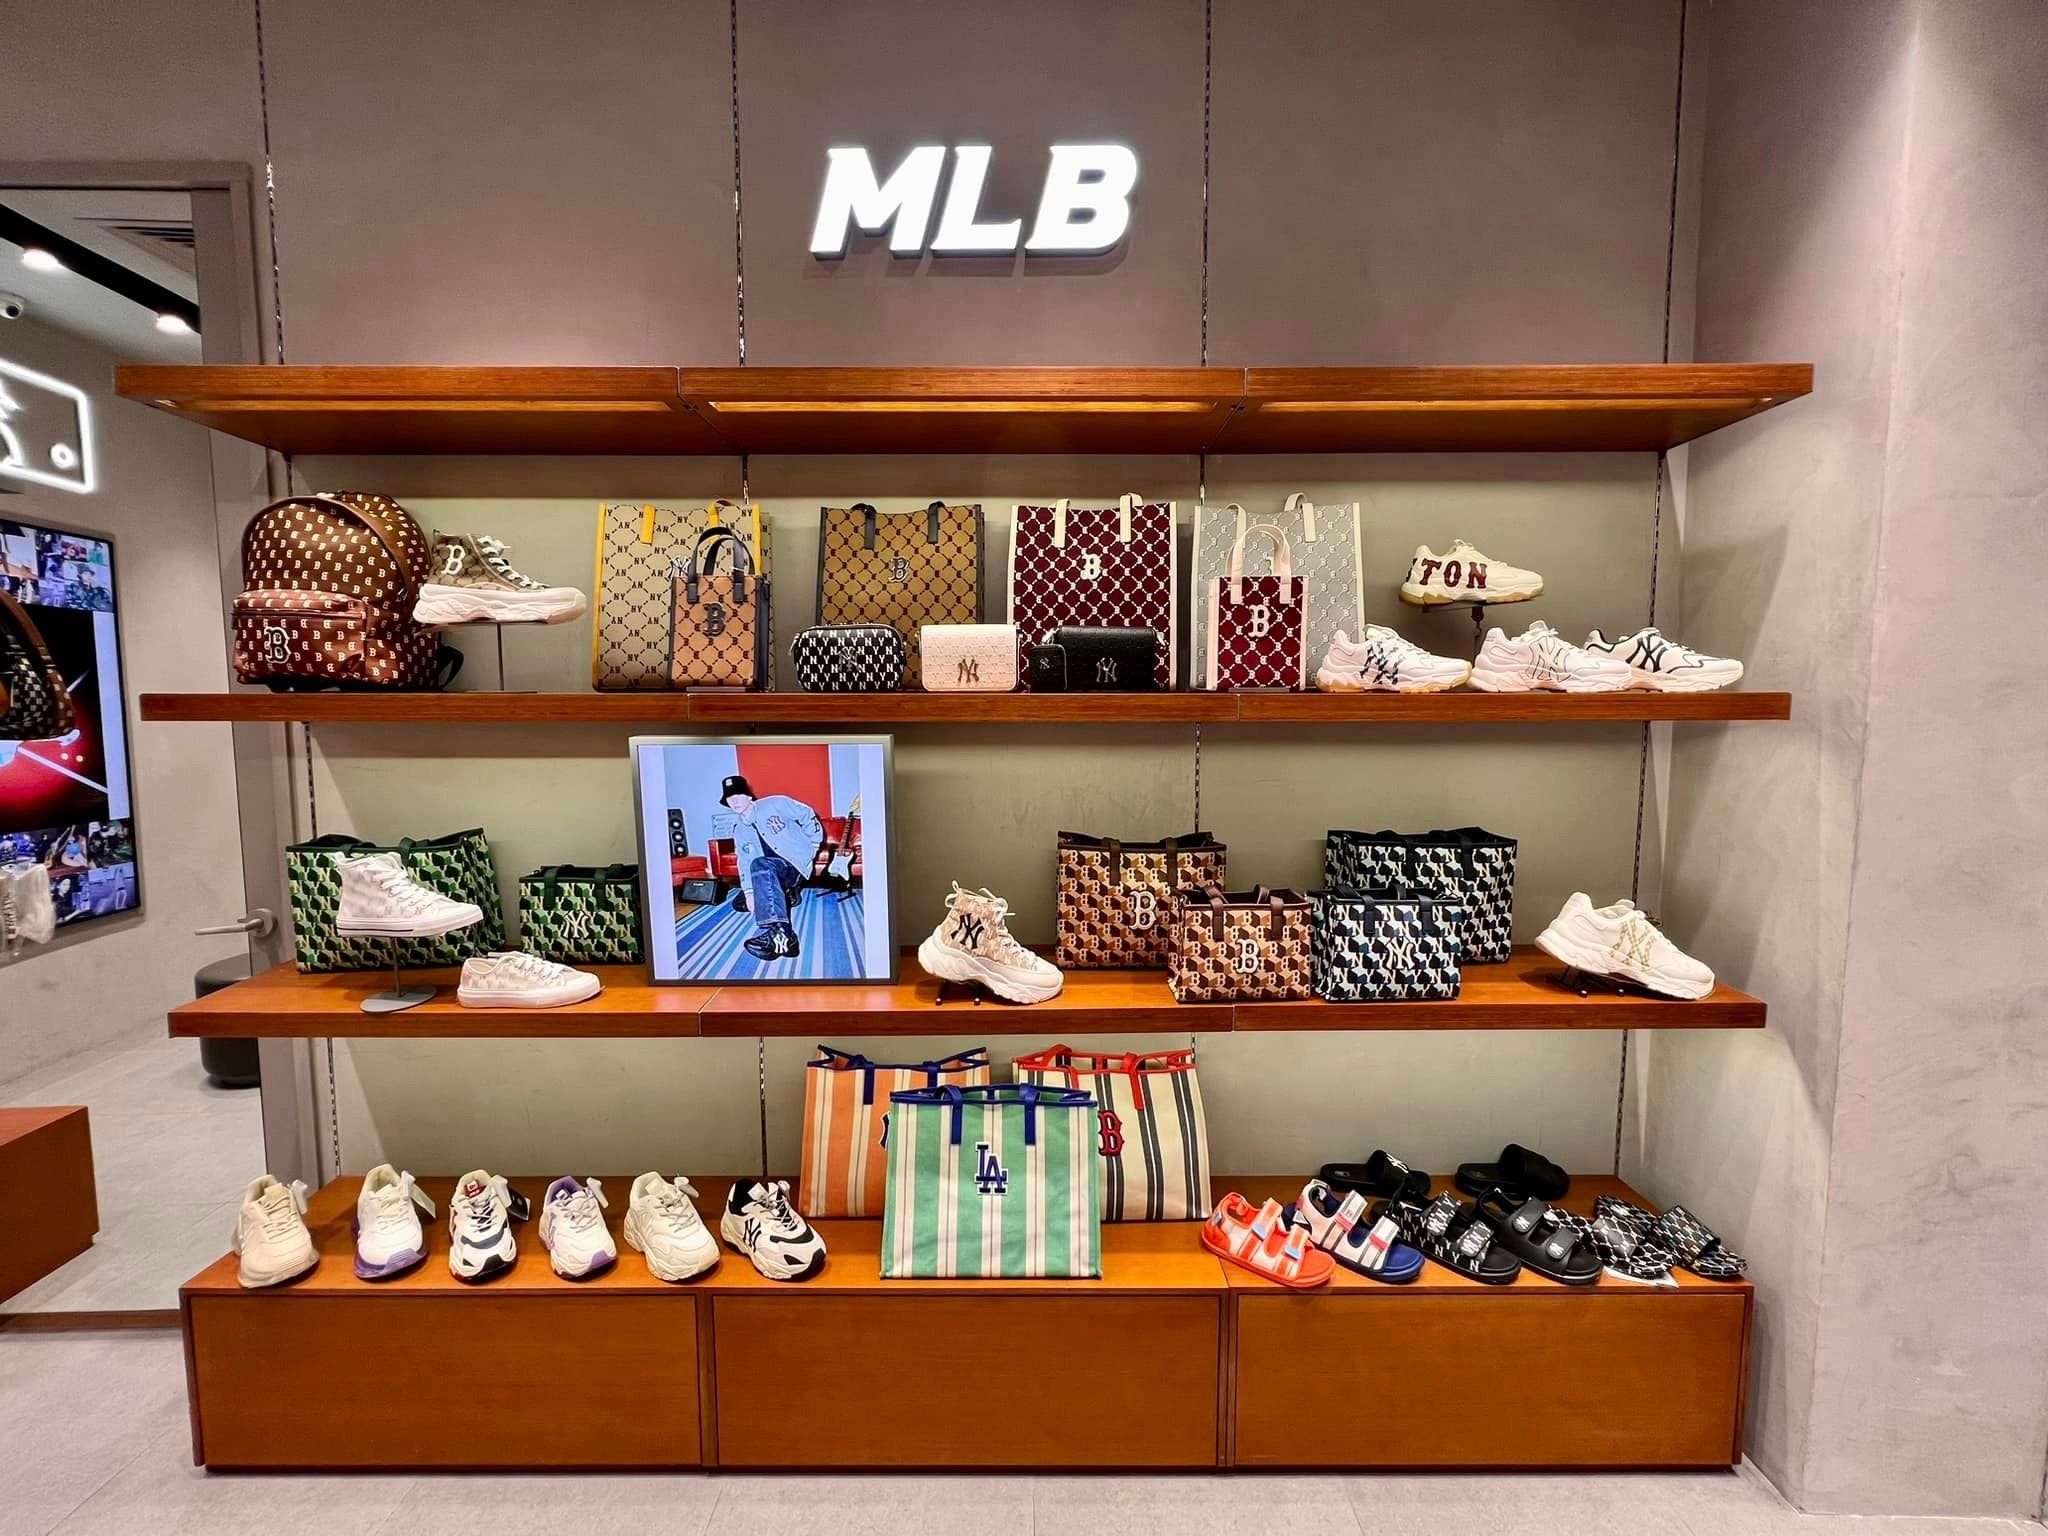 VDTOnlinevn  Thương hiệu MLB ra mắt cửa hàng tại Thành phố đáng sống nhất   Đà Nẵng và Hà Nội